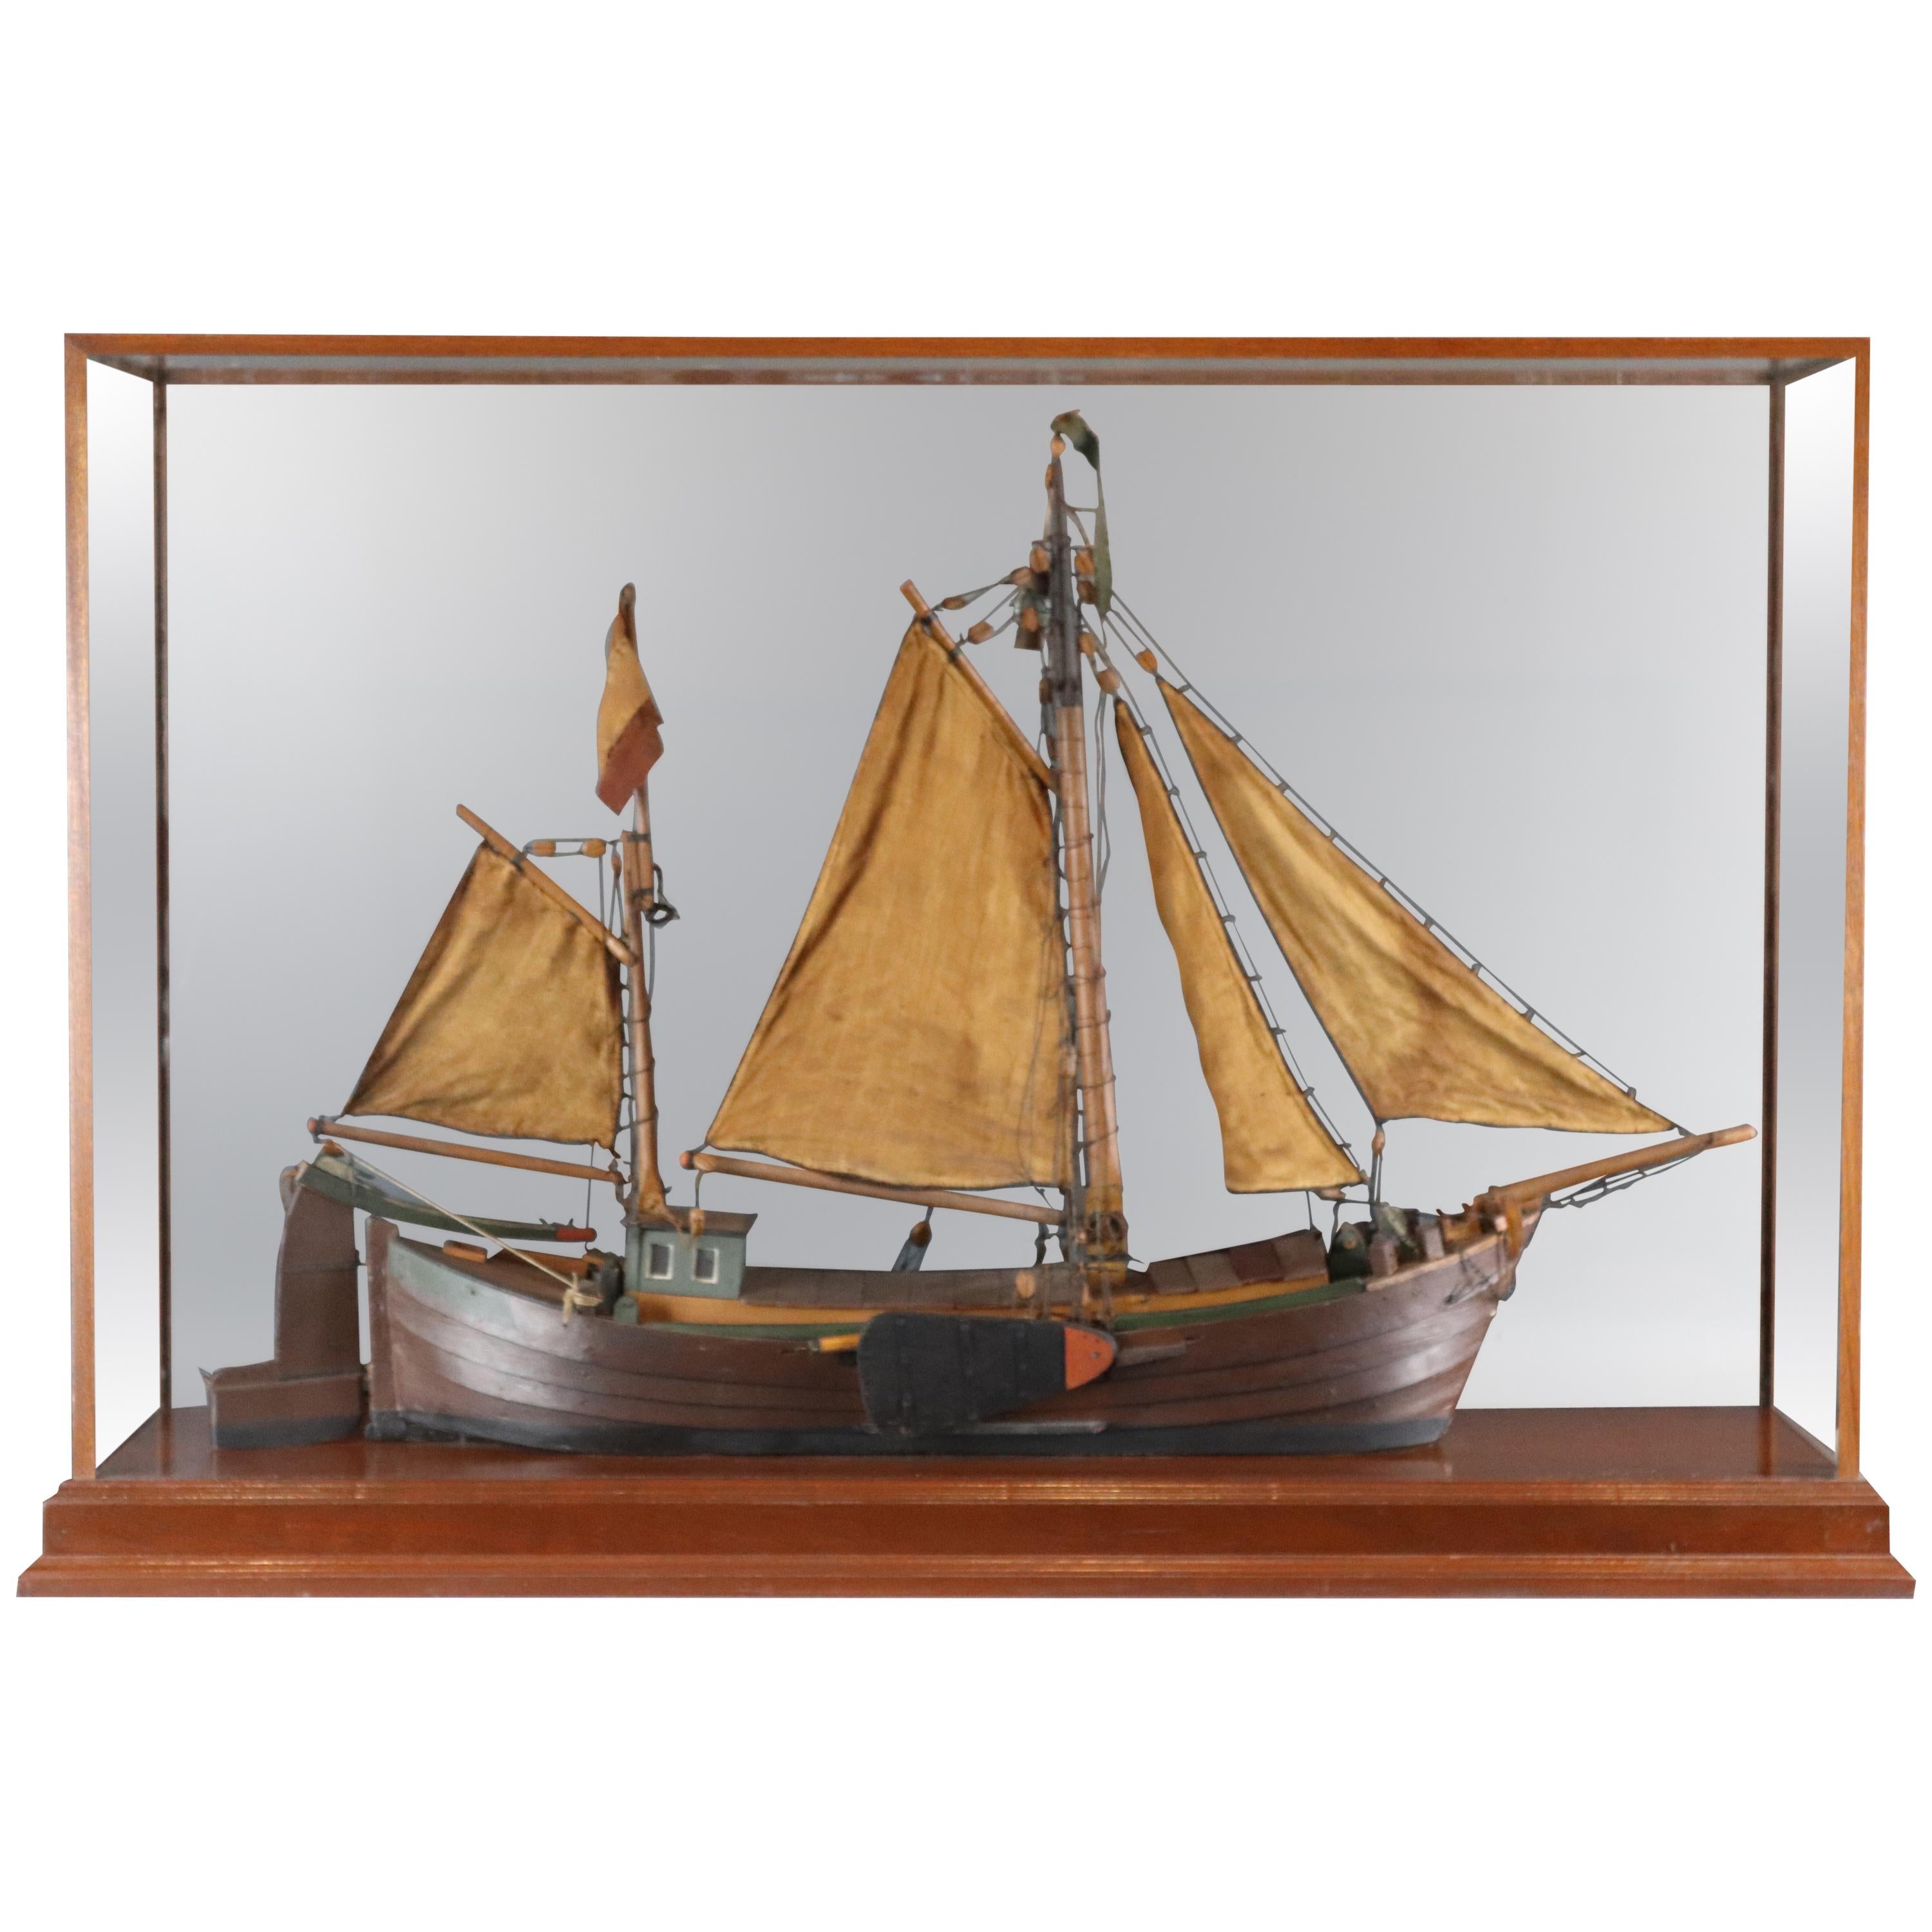 Antique Model of a Thames River Barge